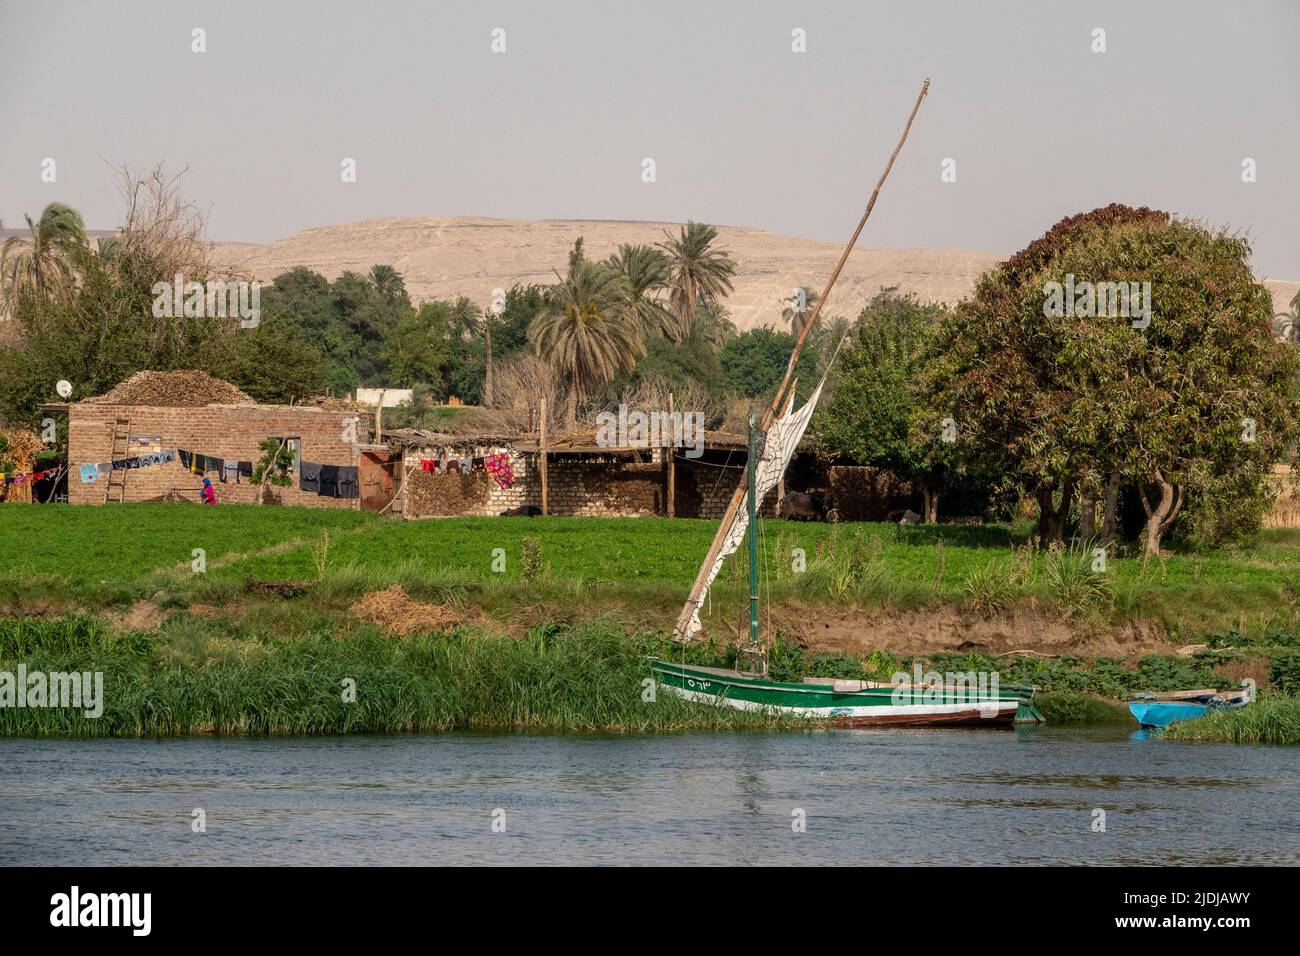 Una felucca tradicional amarrada en las cañas a orillas del río Nilo con vegetación y escenas domésticas detrás Foto de stock